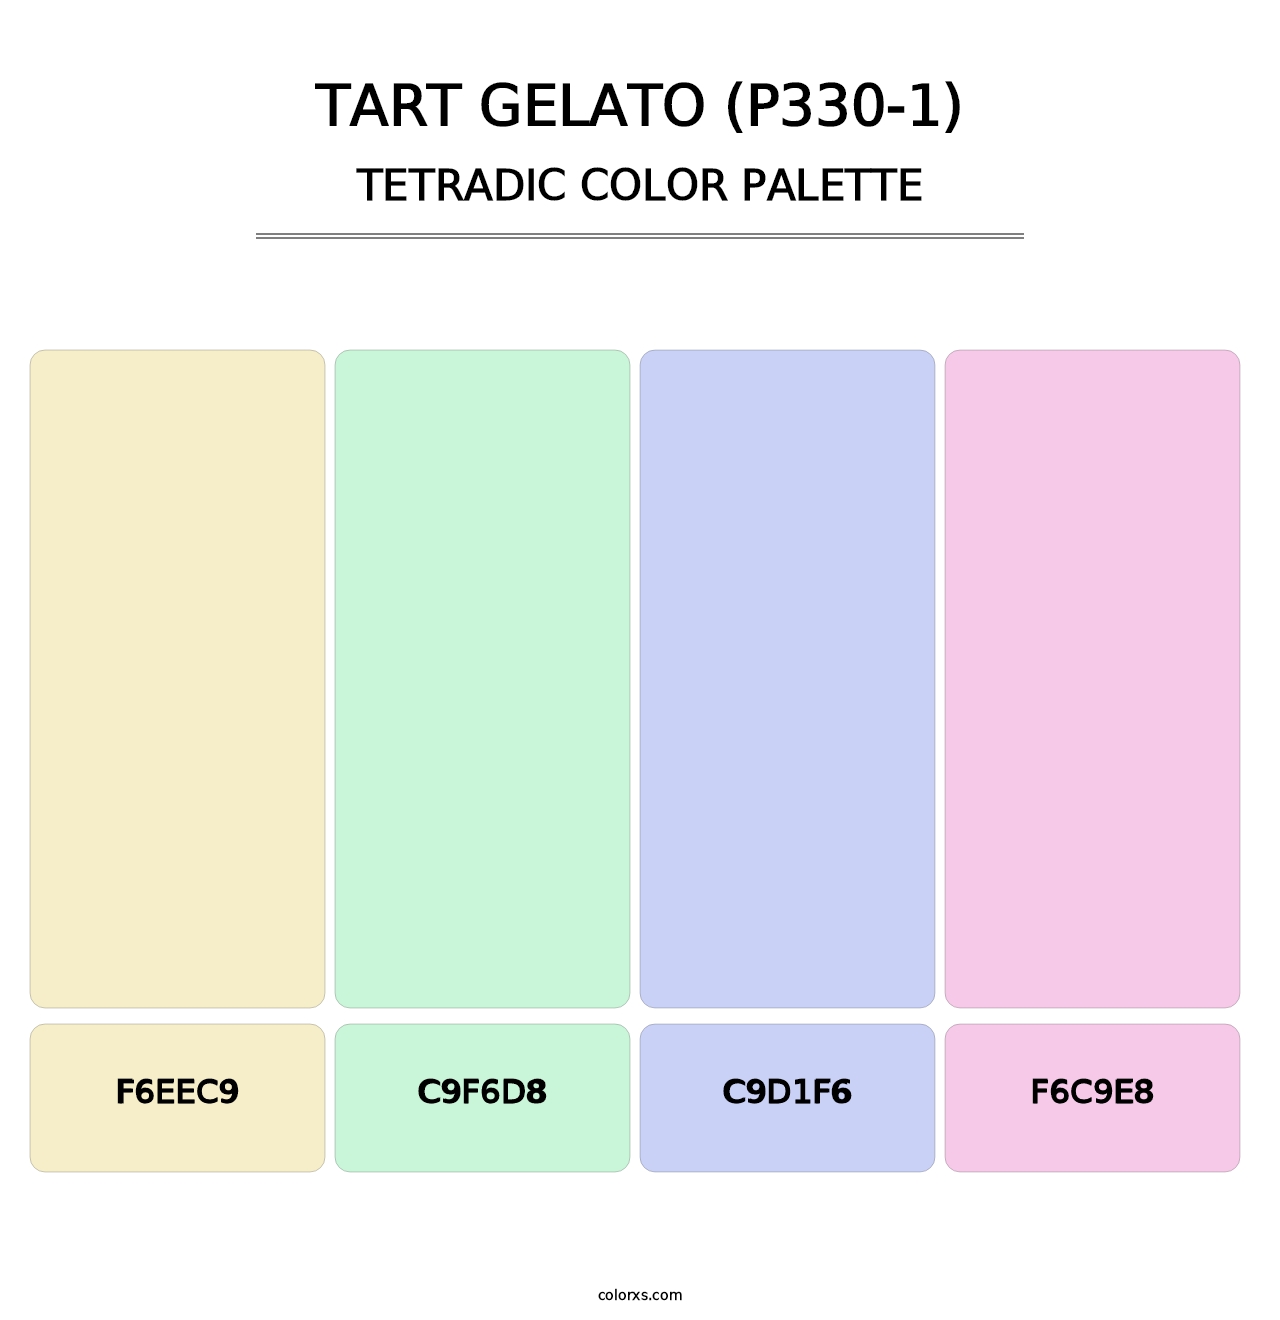 Tart Gelato (P330-1) - Tetradic Color Palette